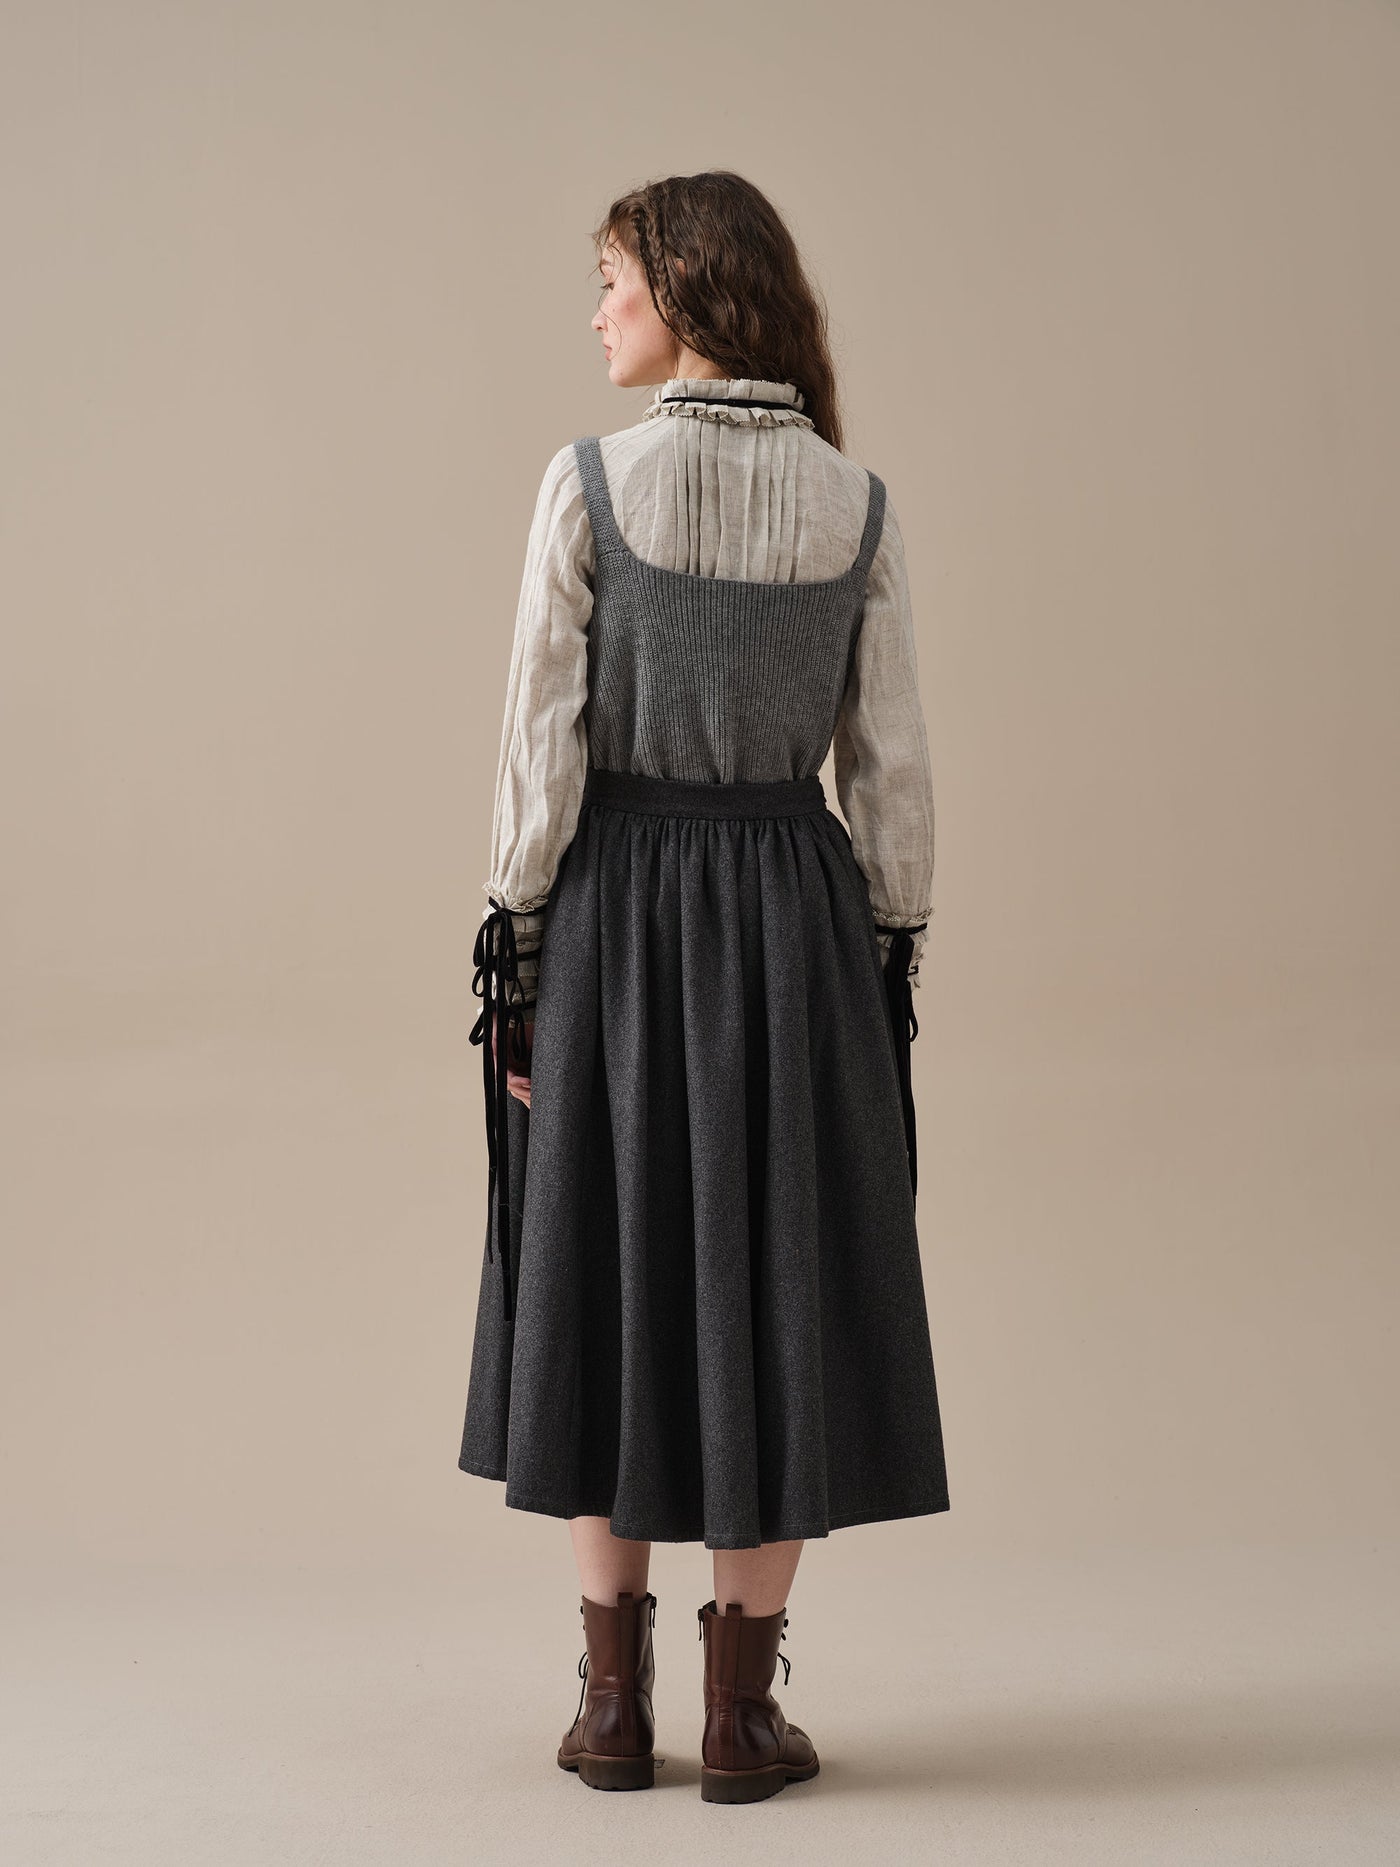 Beth 13 |tied wool skirt